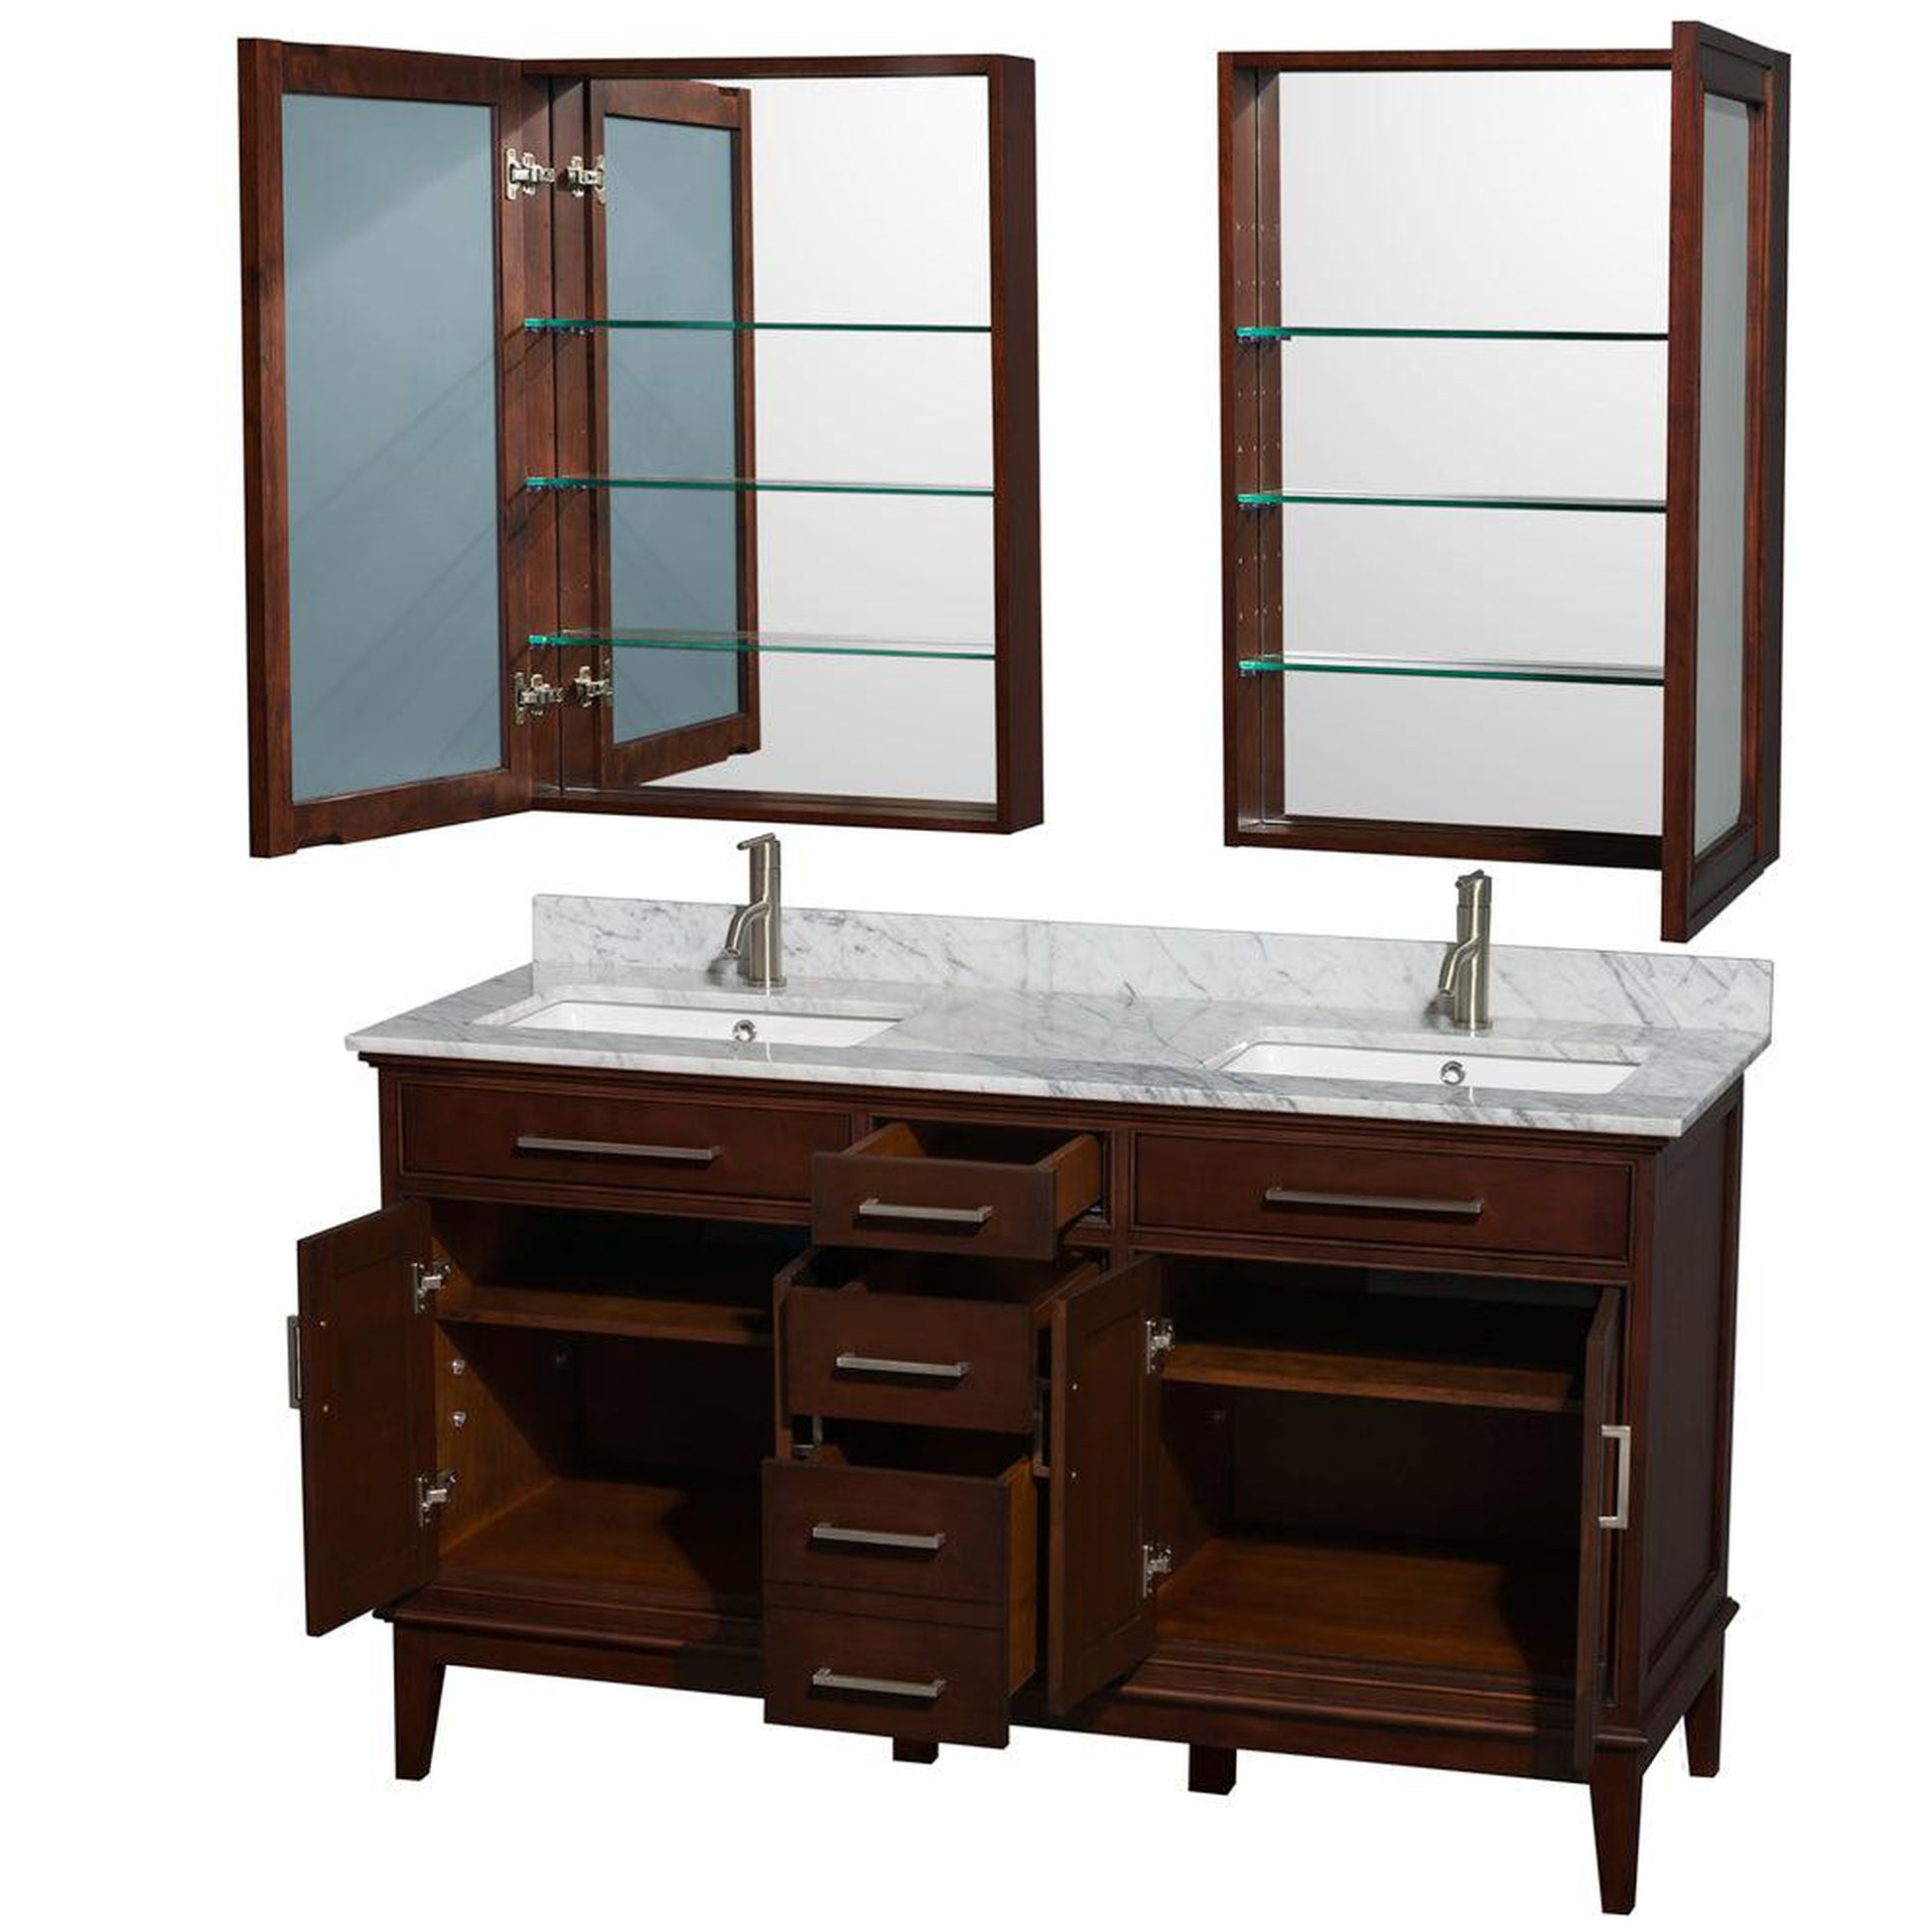 Wyndham Collection Hatton 60" Double Bathroom Vanity in Dark Chestnut, White Carrara Marble Countertop, Undermount Square Sinks, 24" Medicine Cabinet